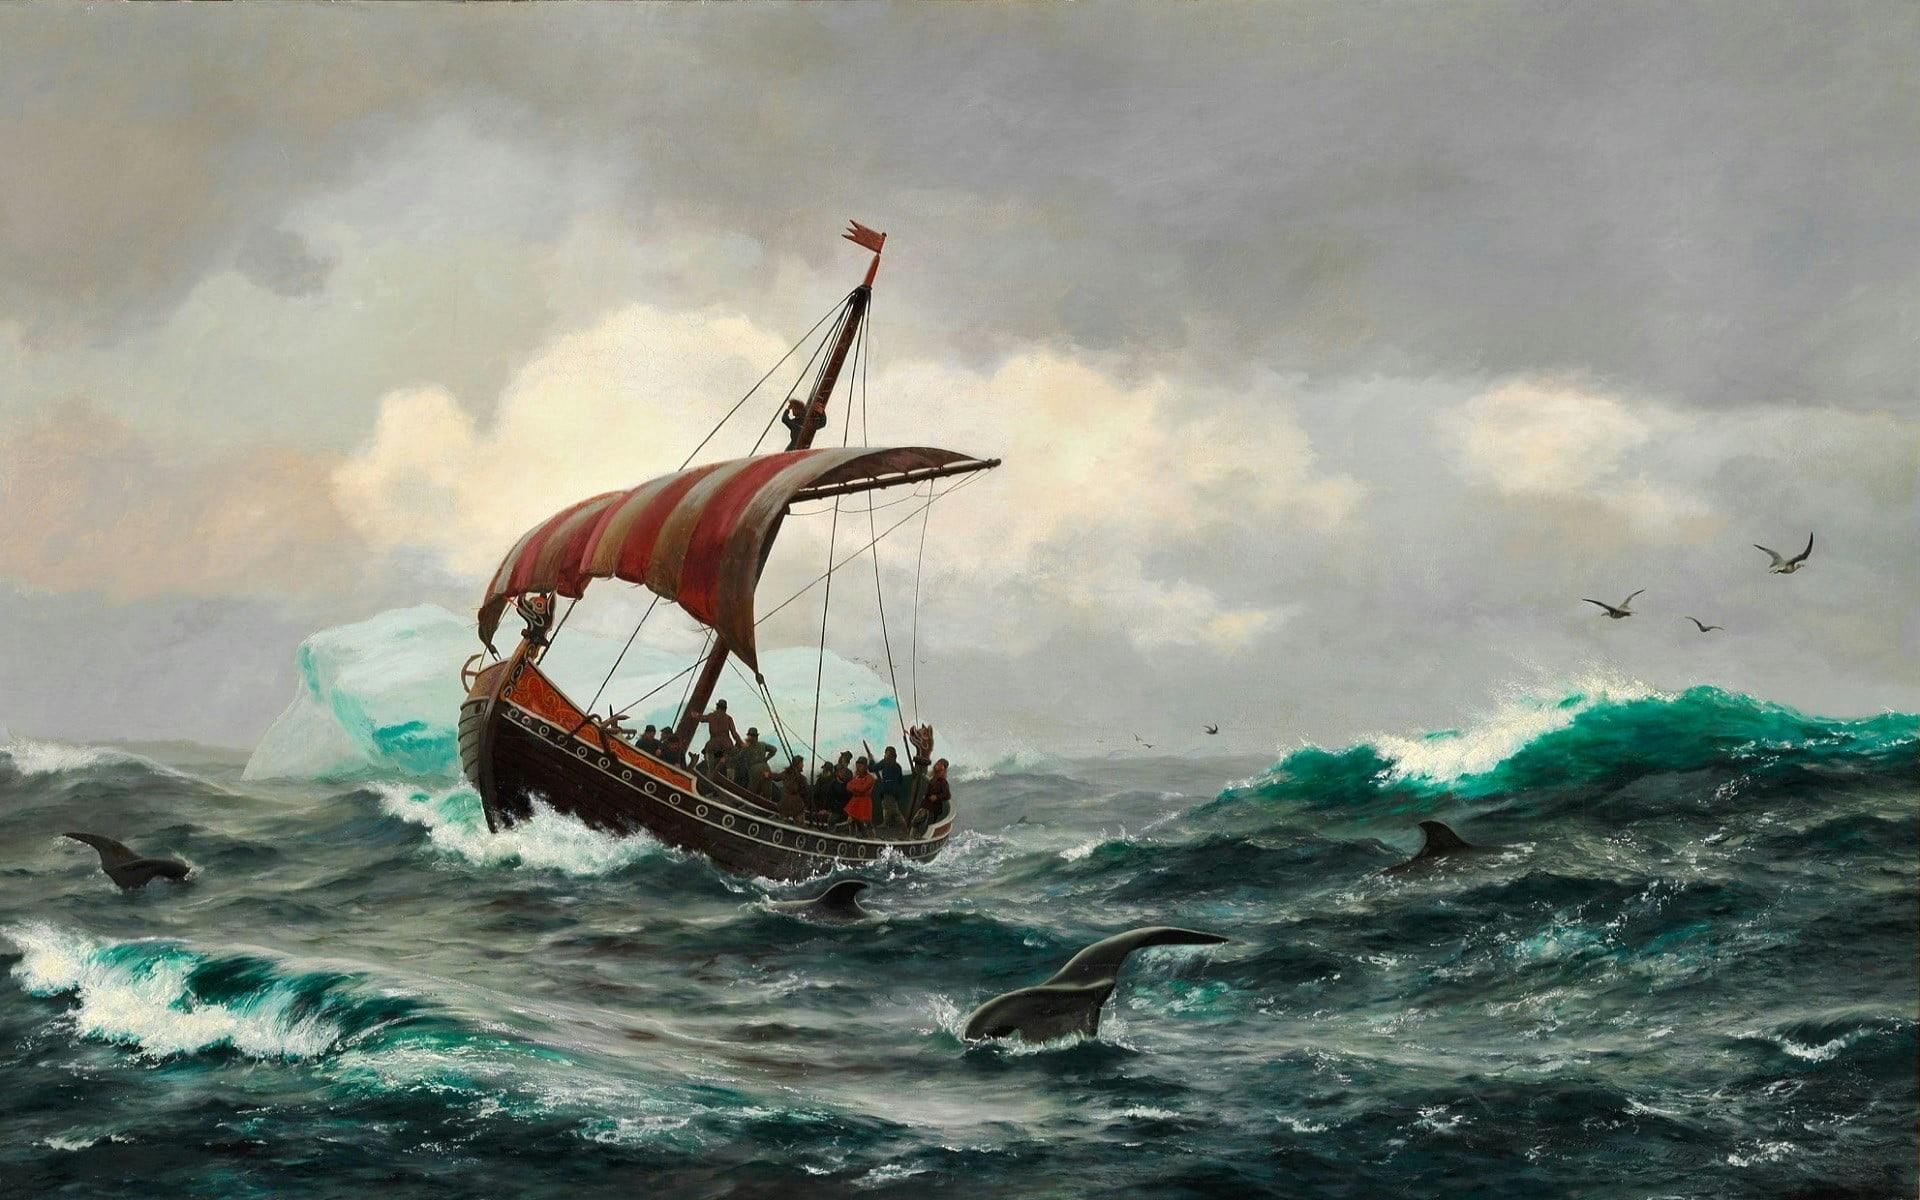 Amerikayı İlk Keşfeden Vikinglerdir(Bilinmeyen Tarih Serisi)